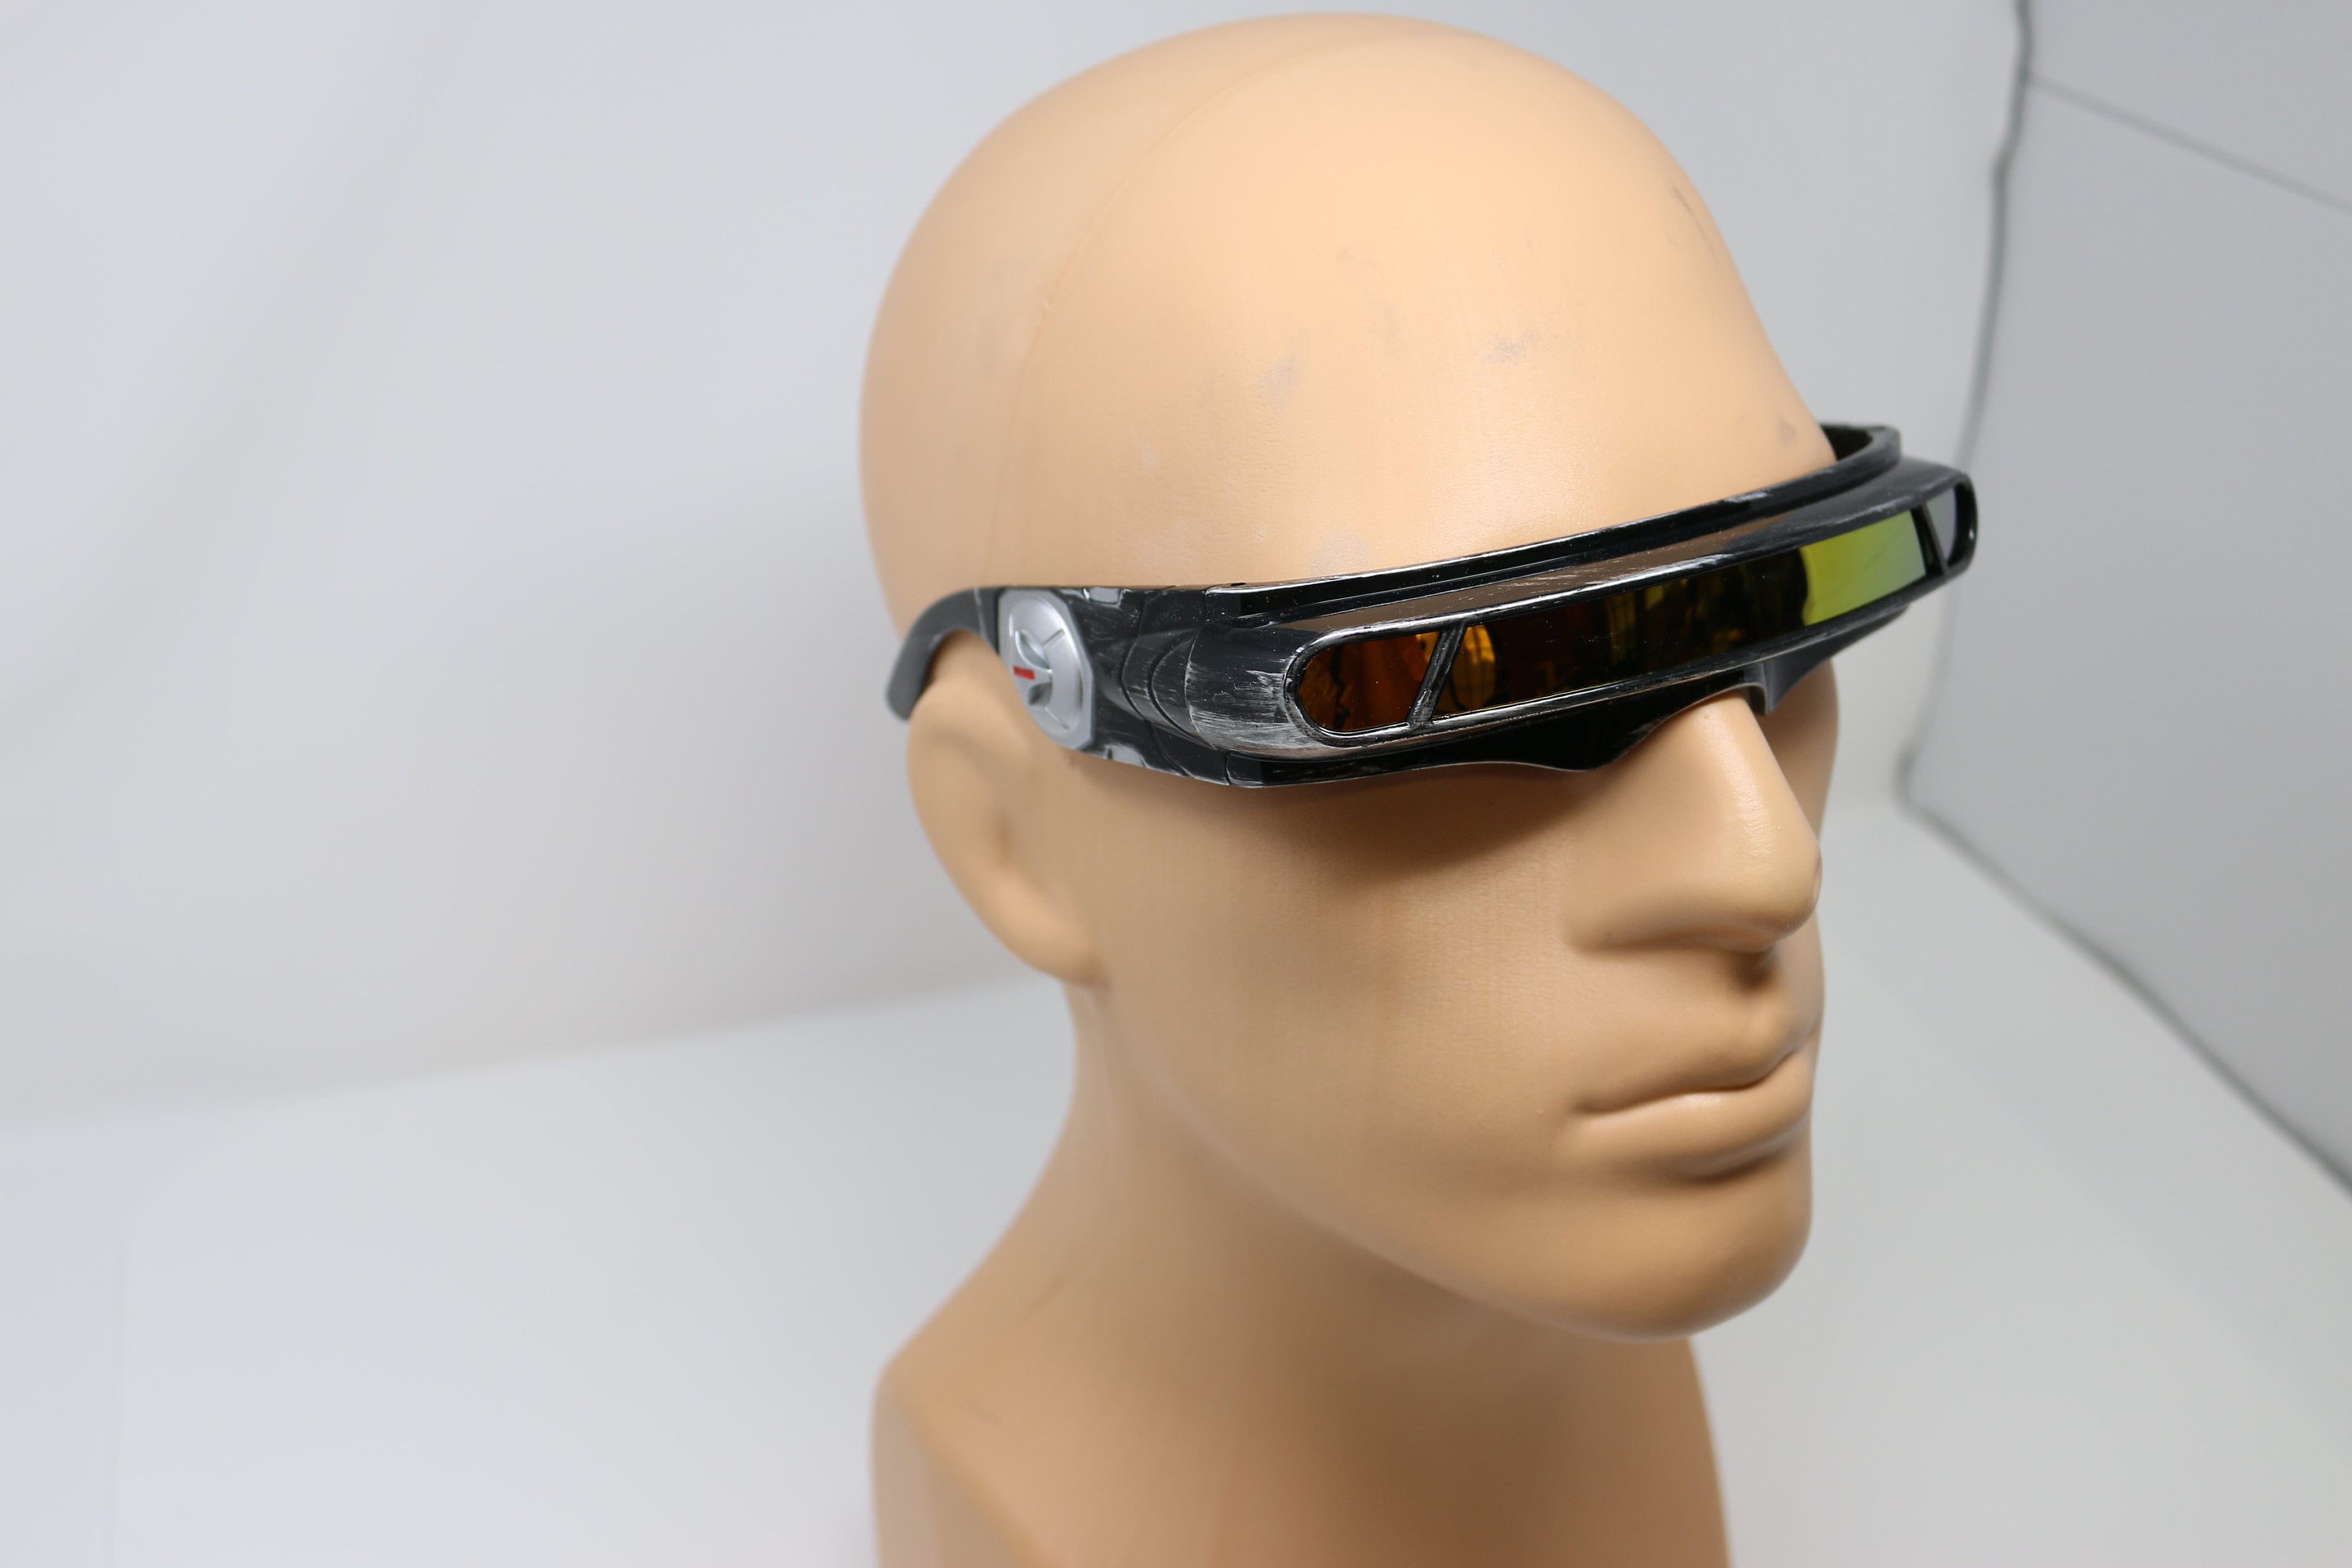 Sonnenbrille Futuristische N Cyclops Visier Laser Brillen UV400